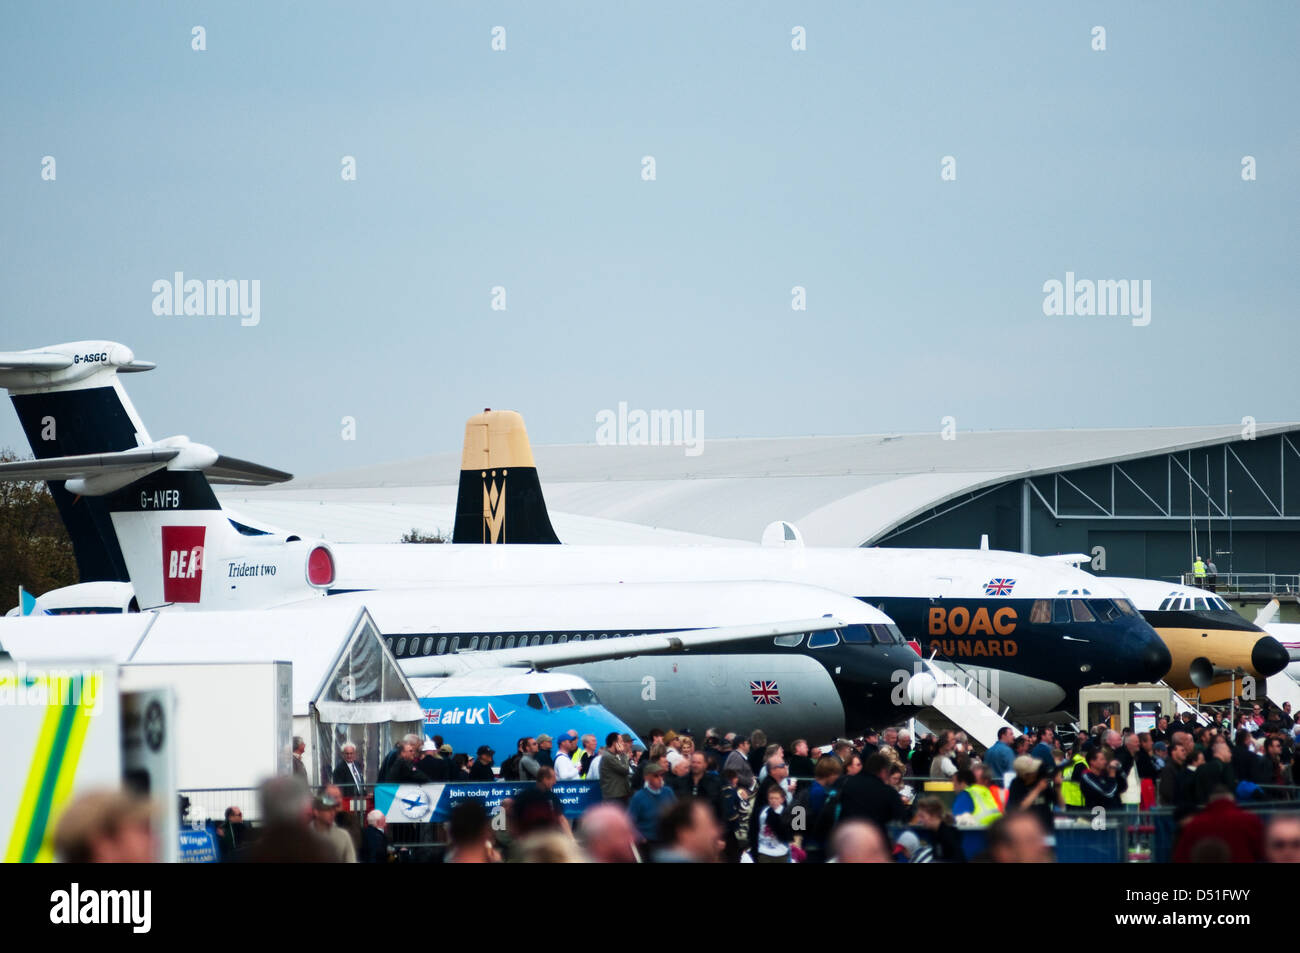 Imagen que muestra el paisaje de grandes multitudes de personas y varios aviones en una exhibición aérea en el Reino Unido. Foto de stock